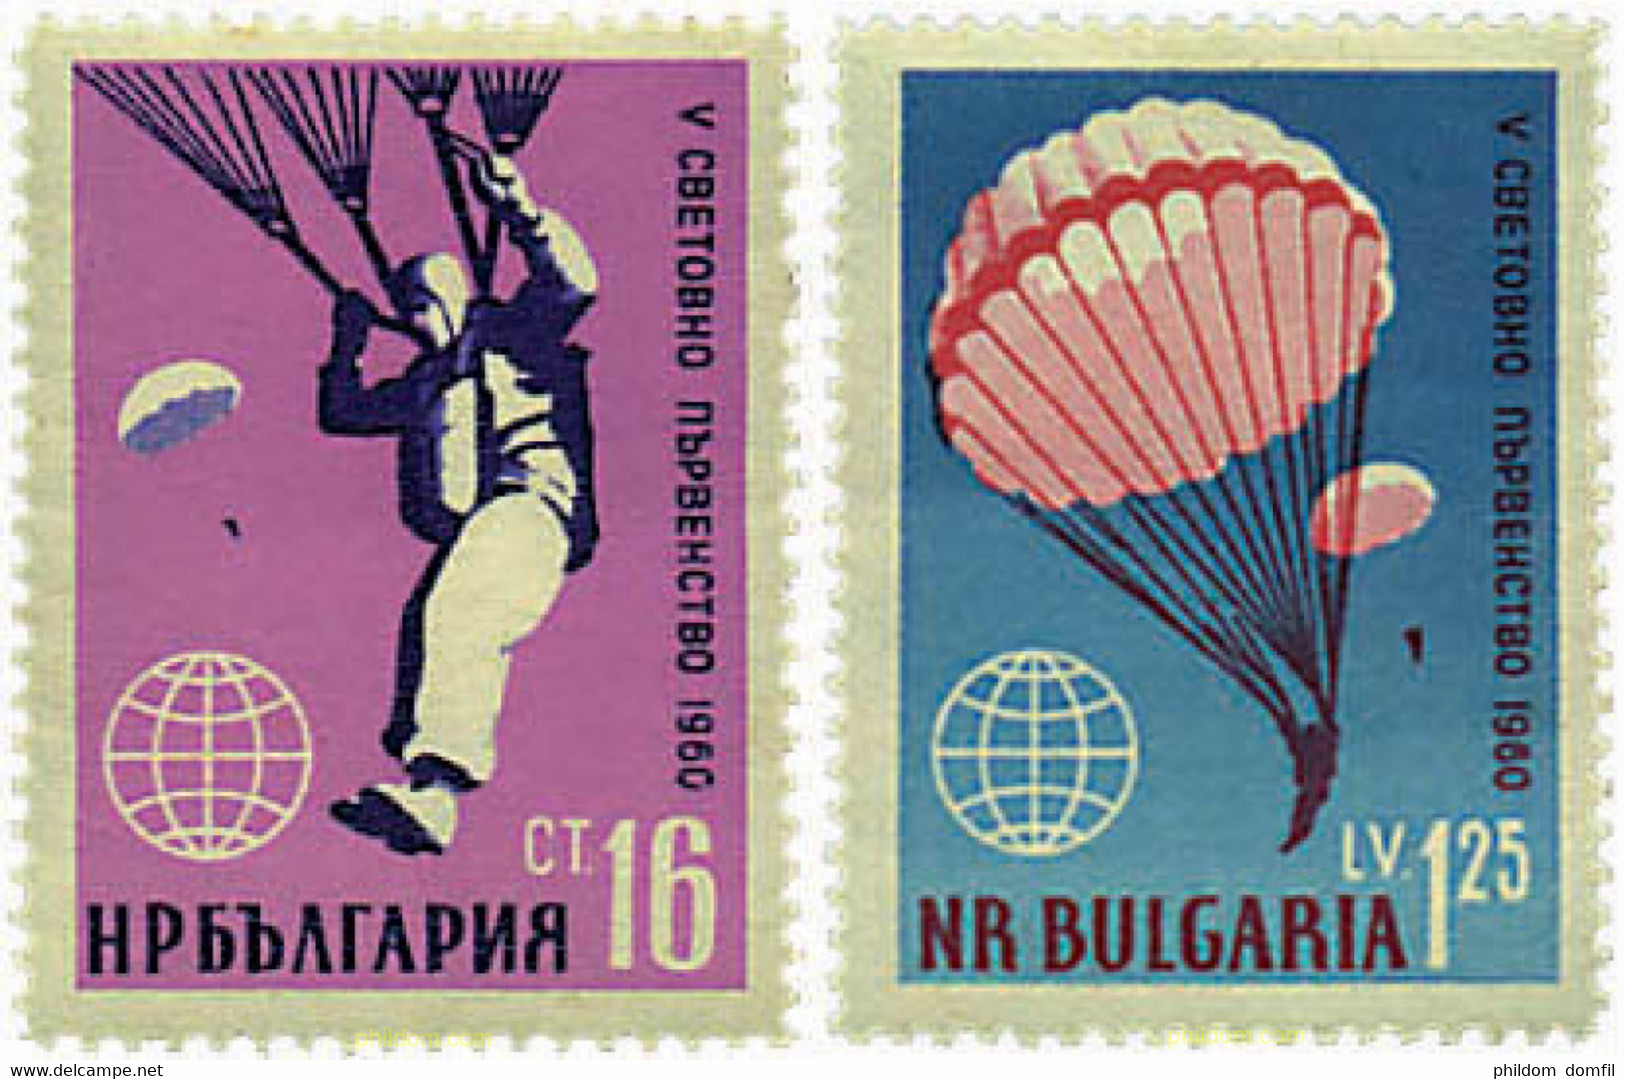 80484 MNH BULGARIA 1960 5 CAMPEONATO MUNDIAL DE PARACAIDISMO - Paracadutismo